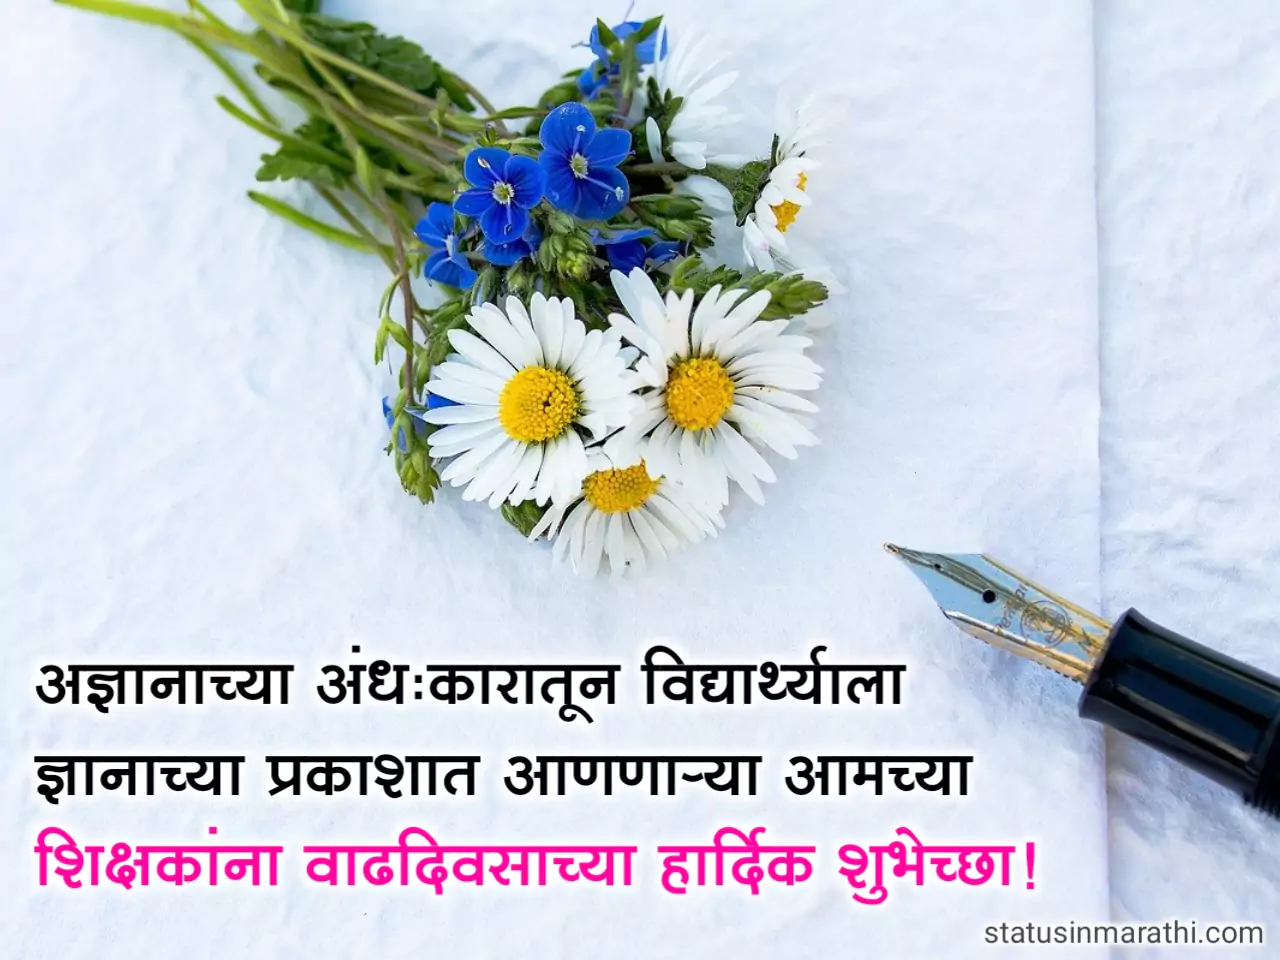 Happy Birthday Quotes for teacher in marathi